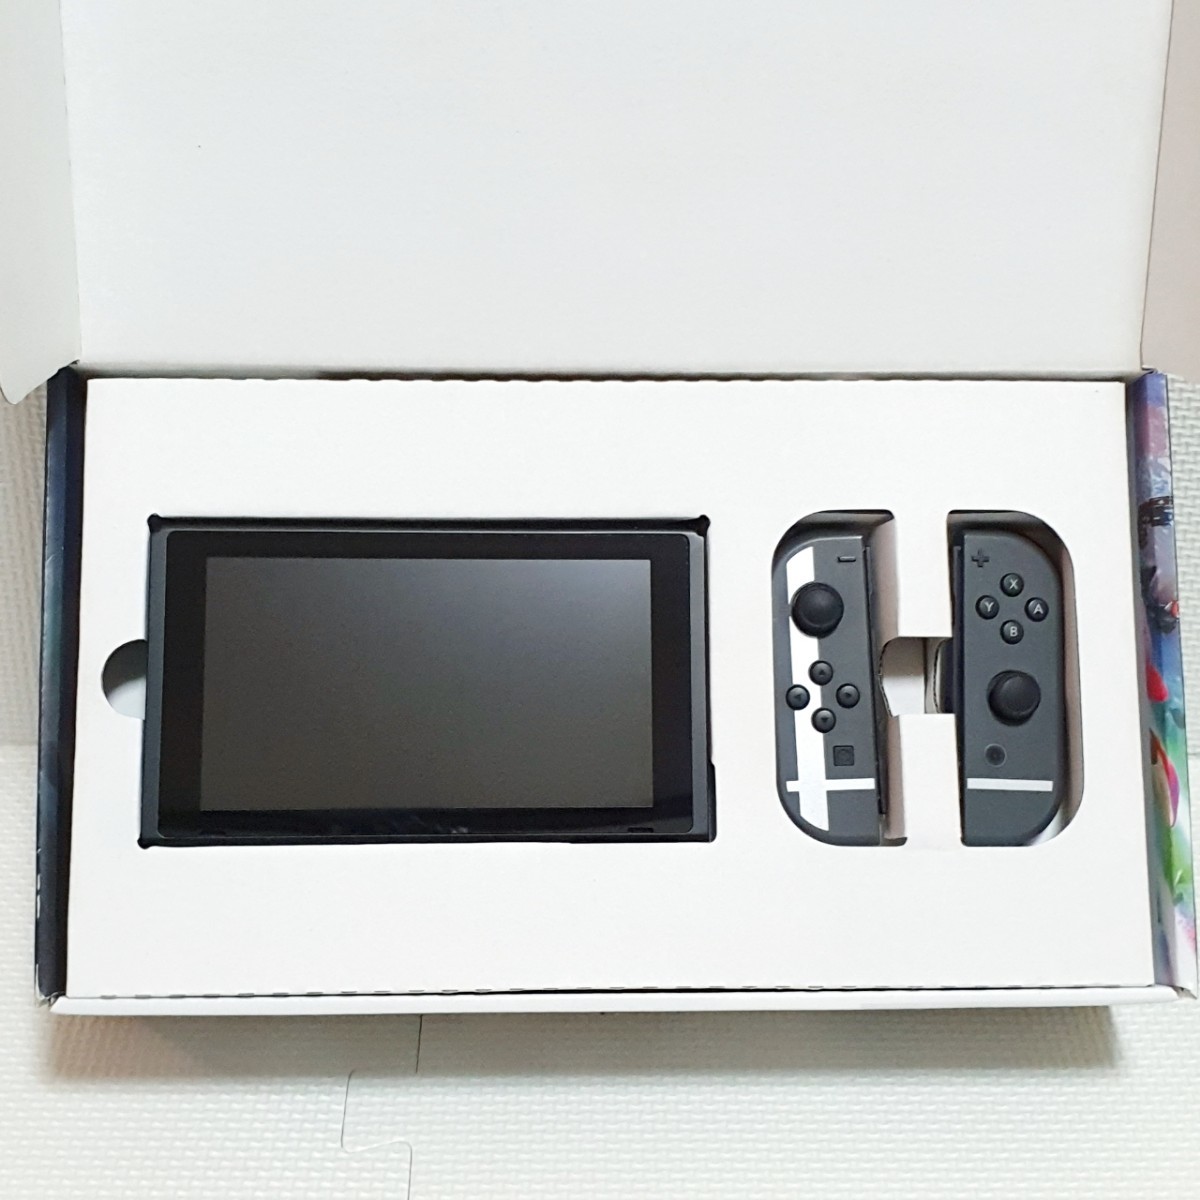 希少 大乱闘スマブラモデル Nintendo Switch ニンテンドースイッチ  